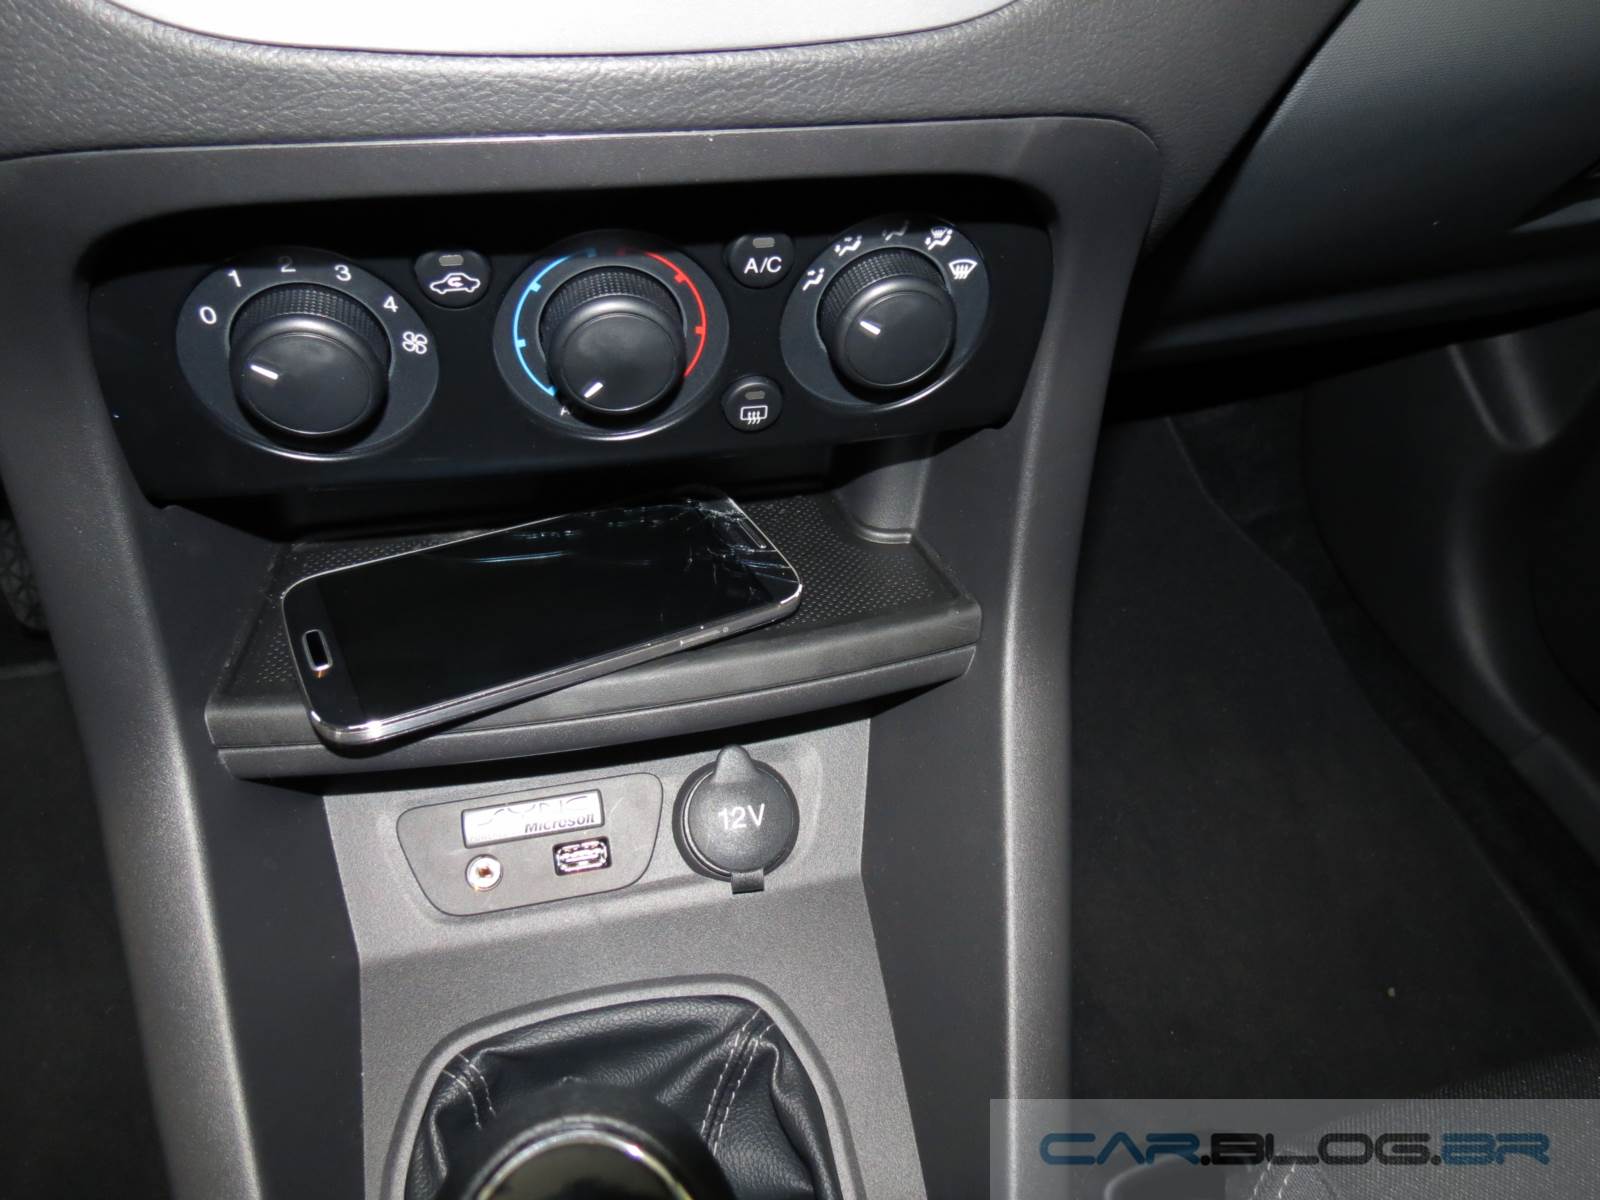 novo Ford KA 2015 - interior - porta-celular